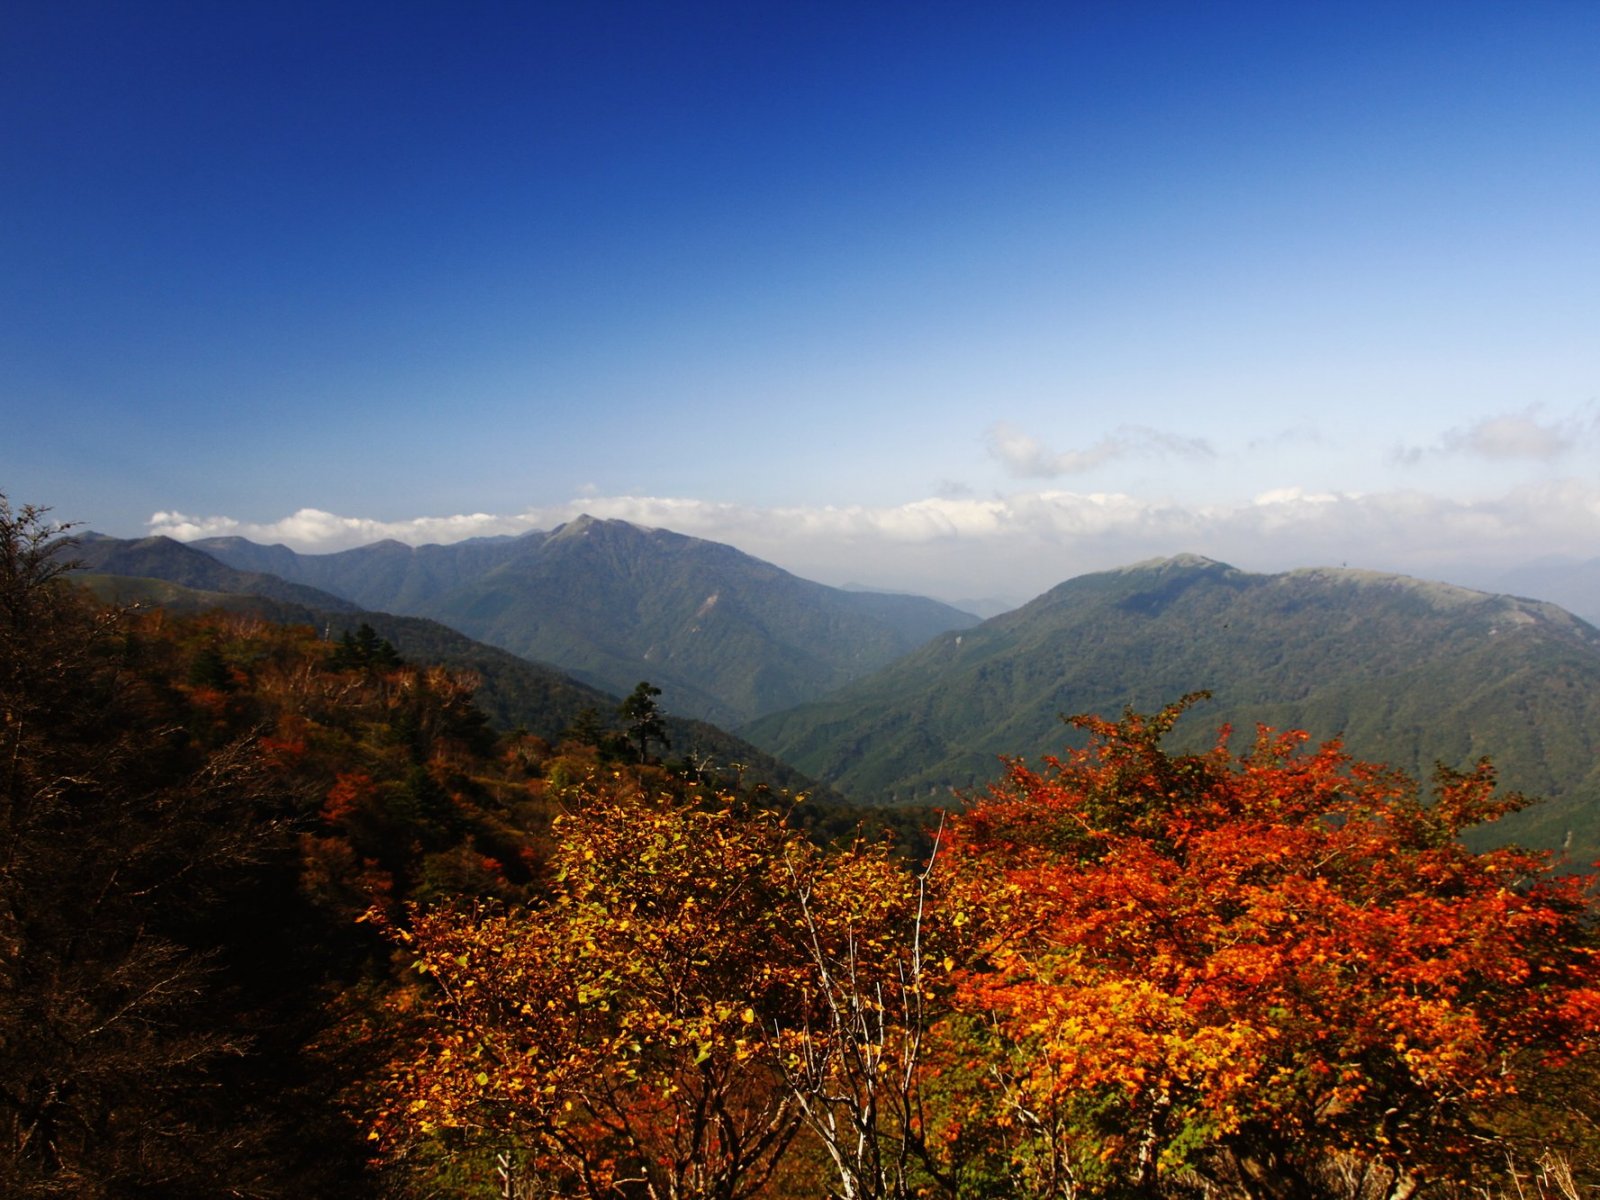 Mt. Tsurugi